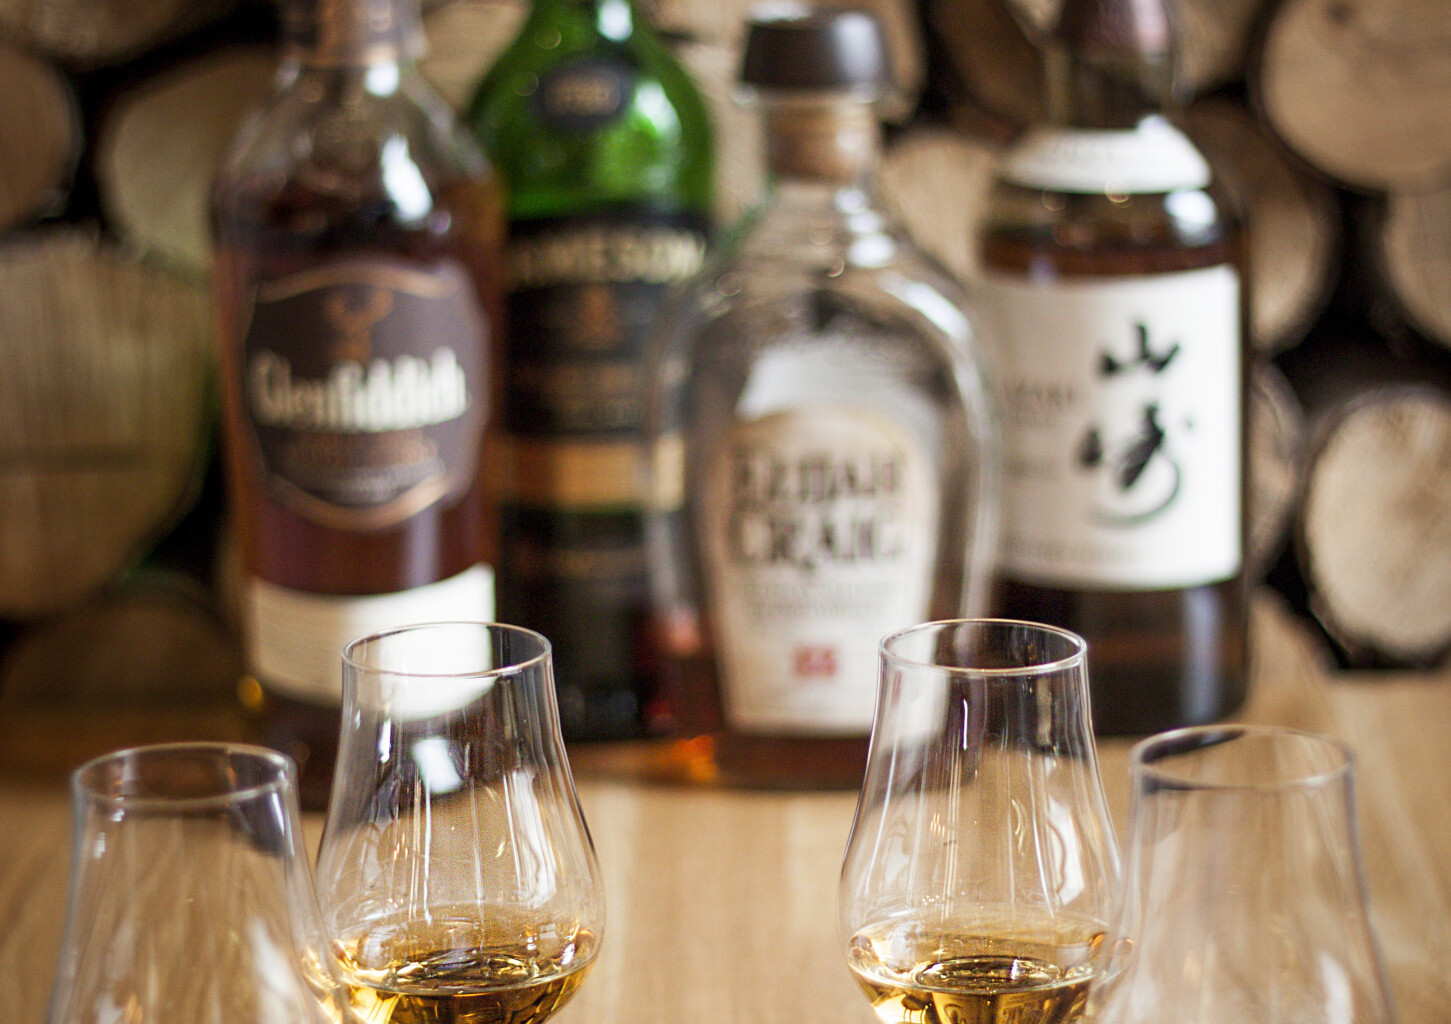 Podróż po Świecie Whisky | Toruń